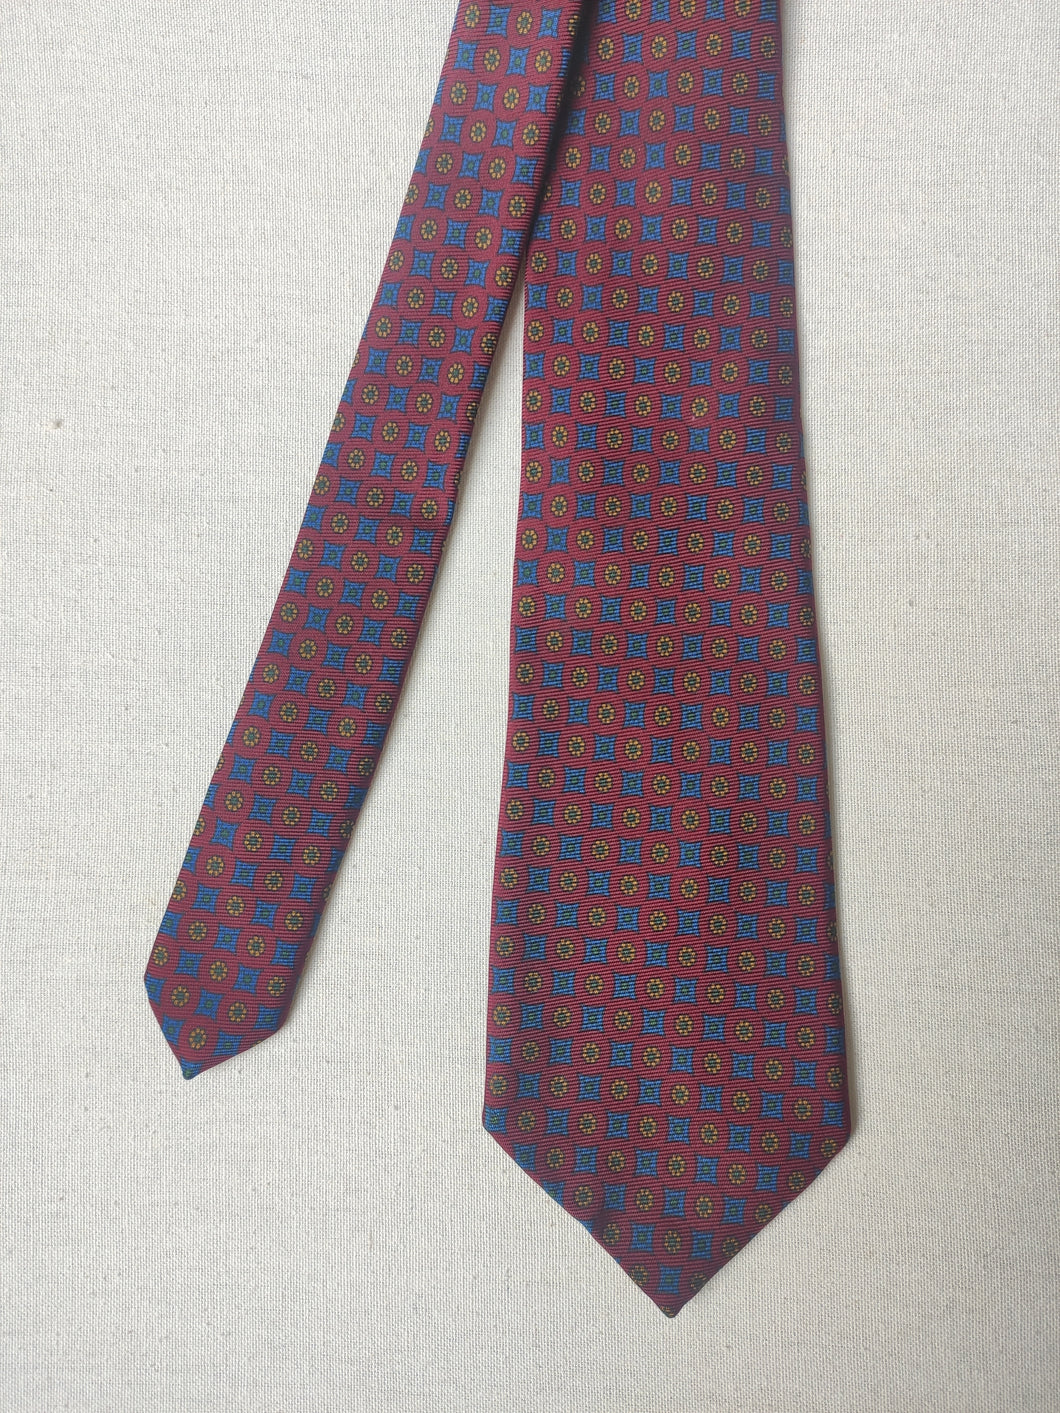 Berteil Paris cravate vintage bordeaux en soie à motif géométrique Made in England